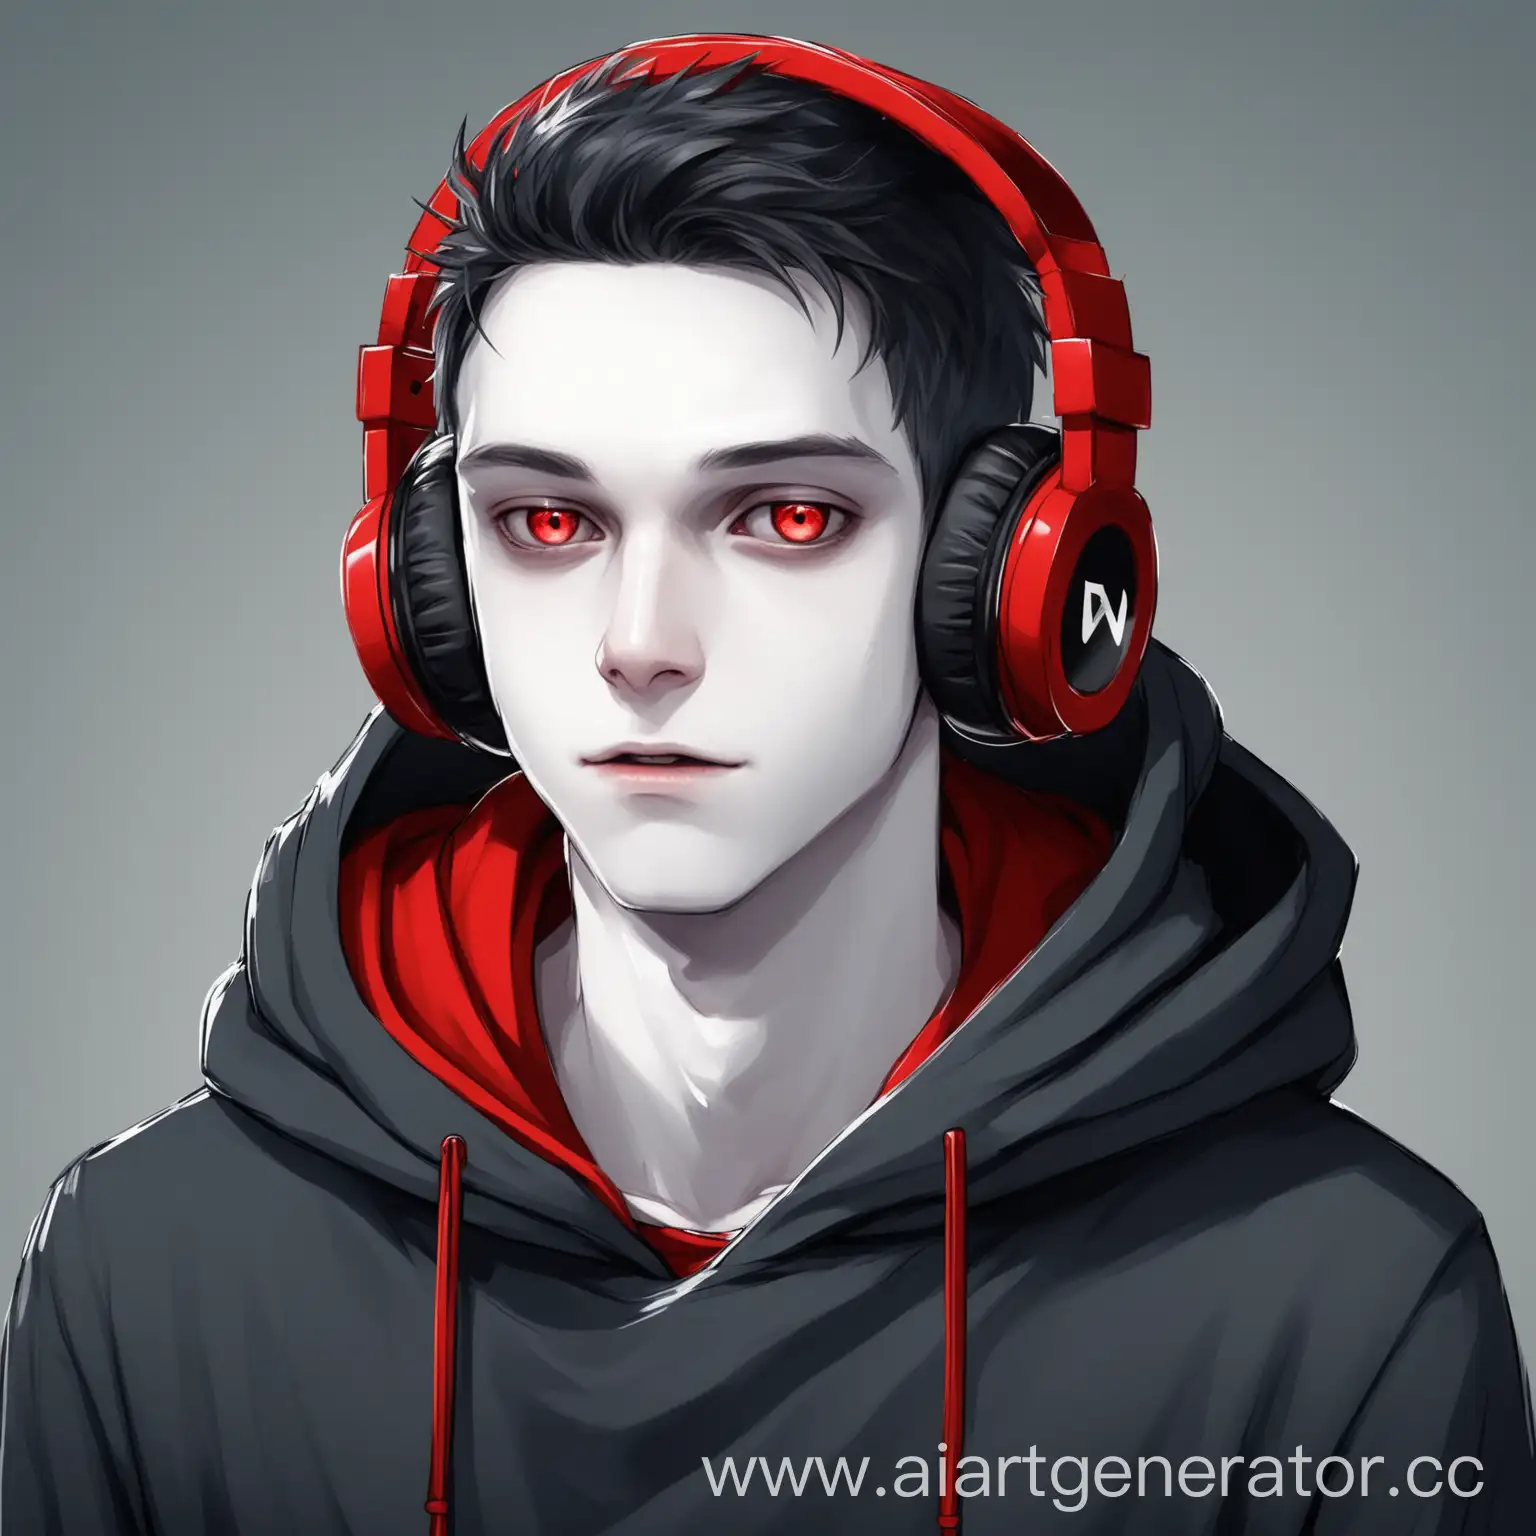 Paleskinned-YouTuber-in-Red-Hoodie-with-Headphones